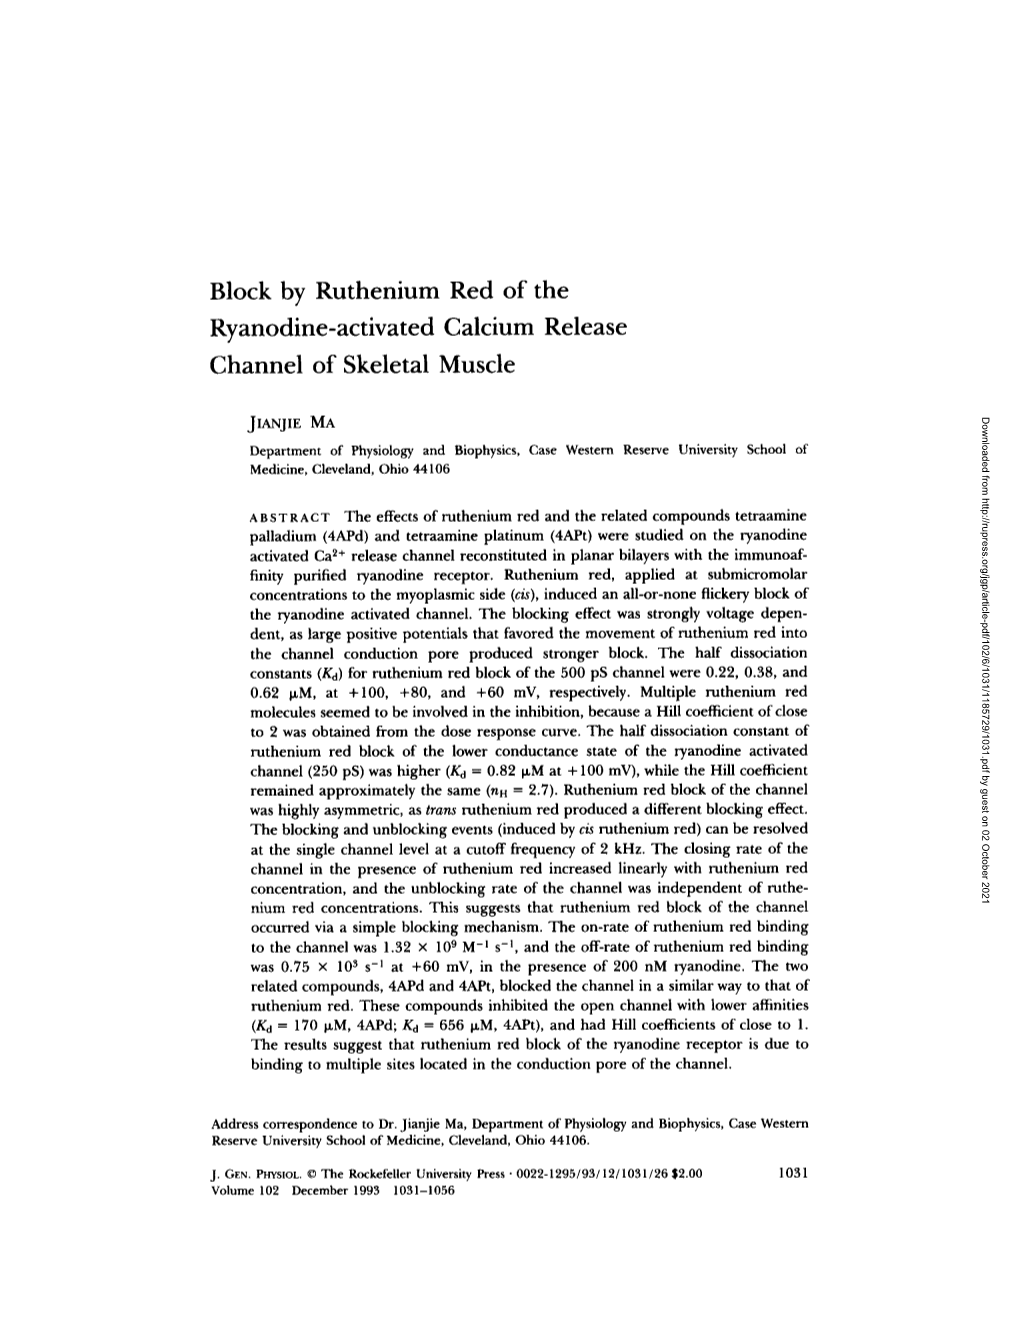 Block by Ruthenium Red of the Ryanodine-Activated Calcium